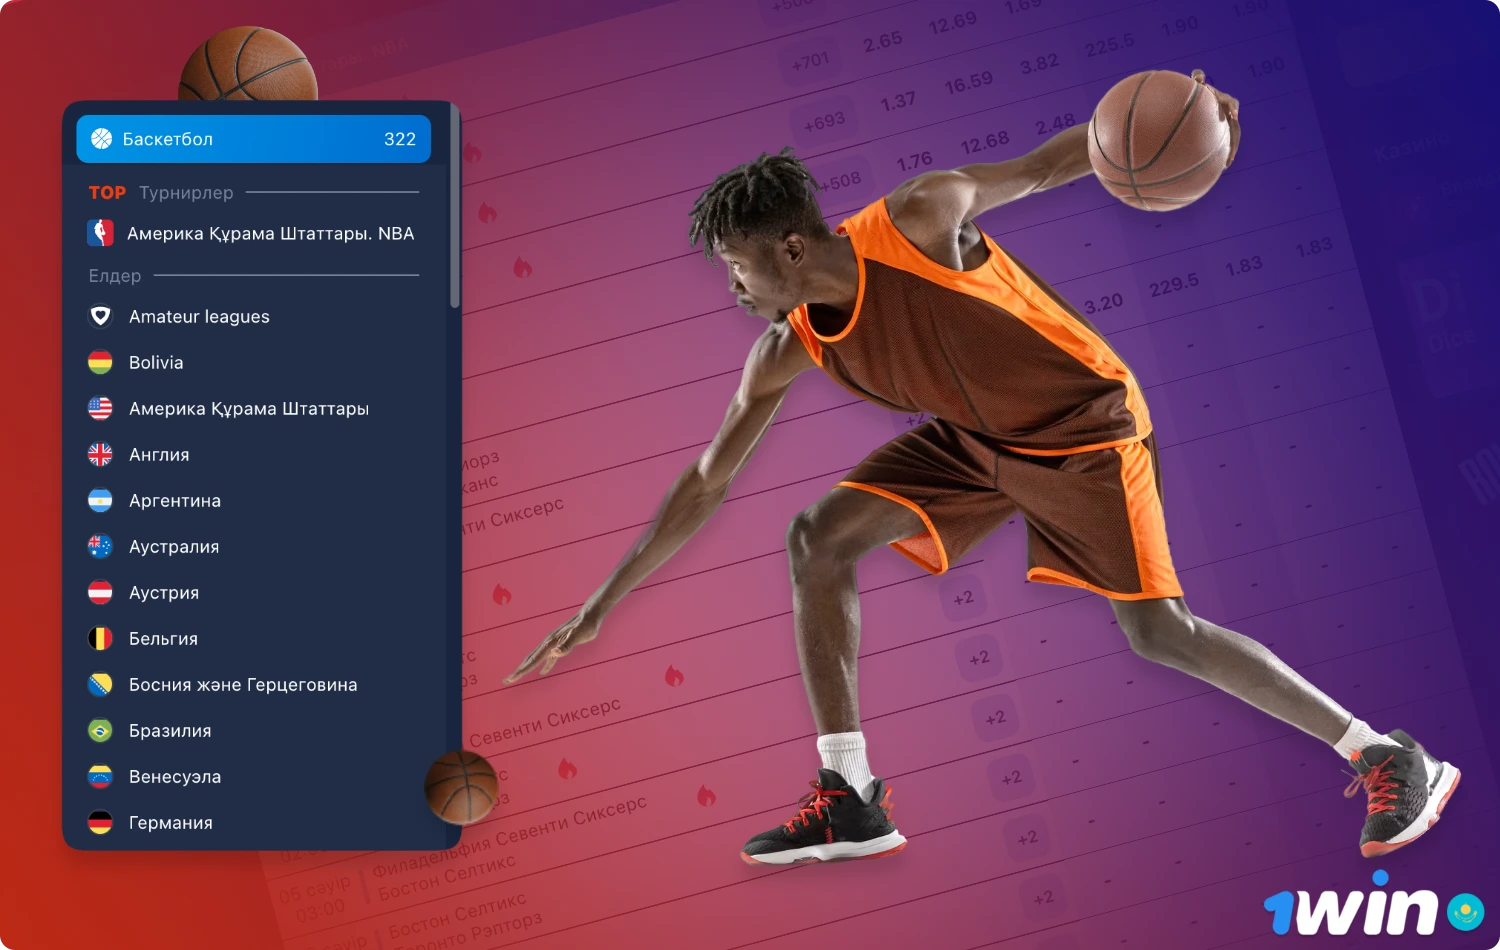 Букмекерская контора 1win предлагает своим пользователям возможность делать ставки на баскетбол